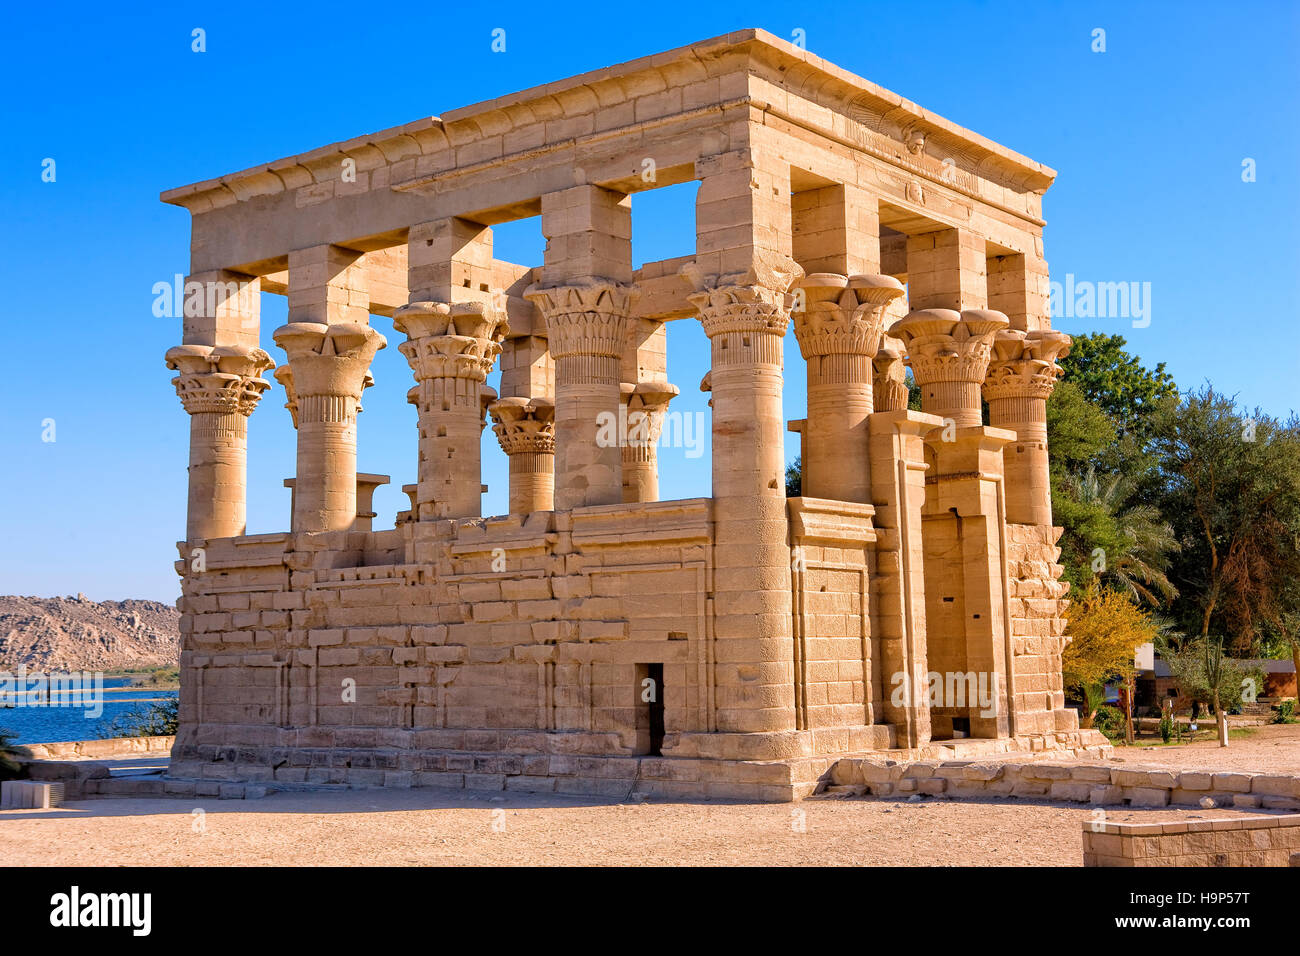 Kiosque de Trajan, temple de Philae, Aswan, Egypte Banque D'Images